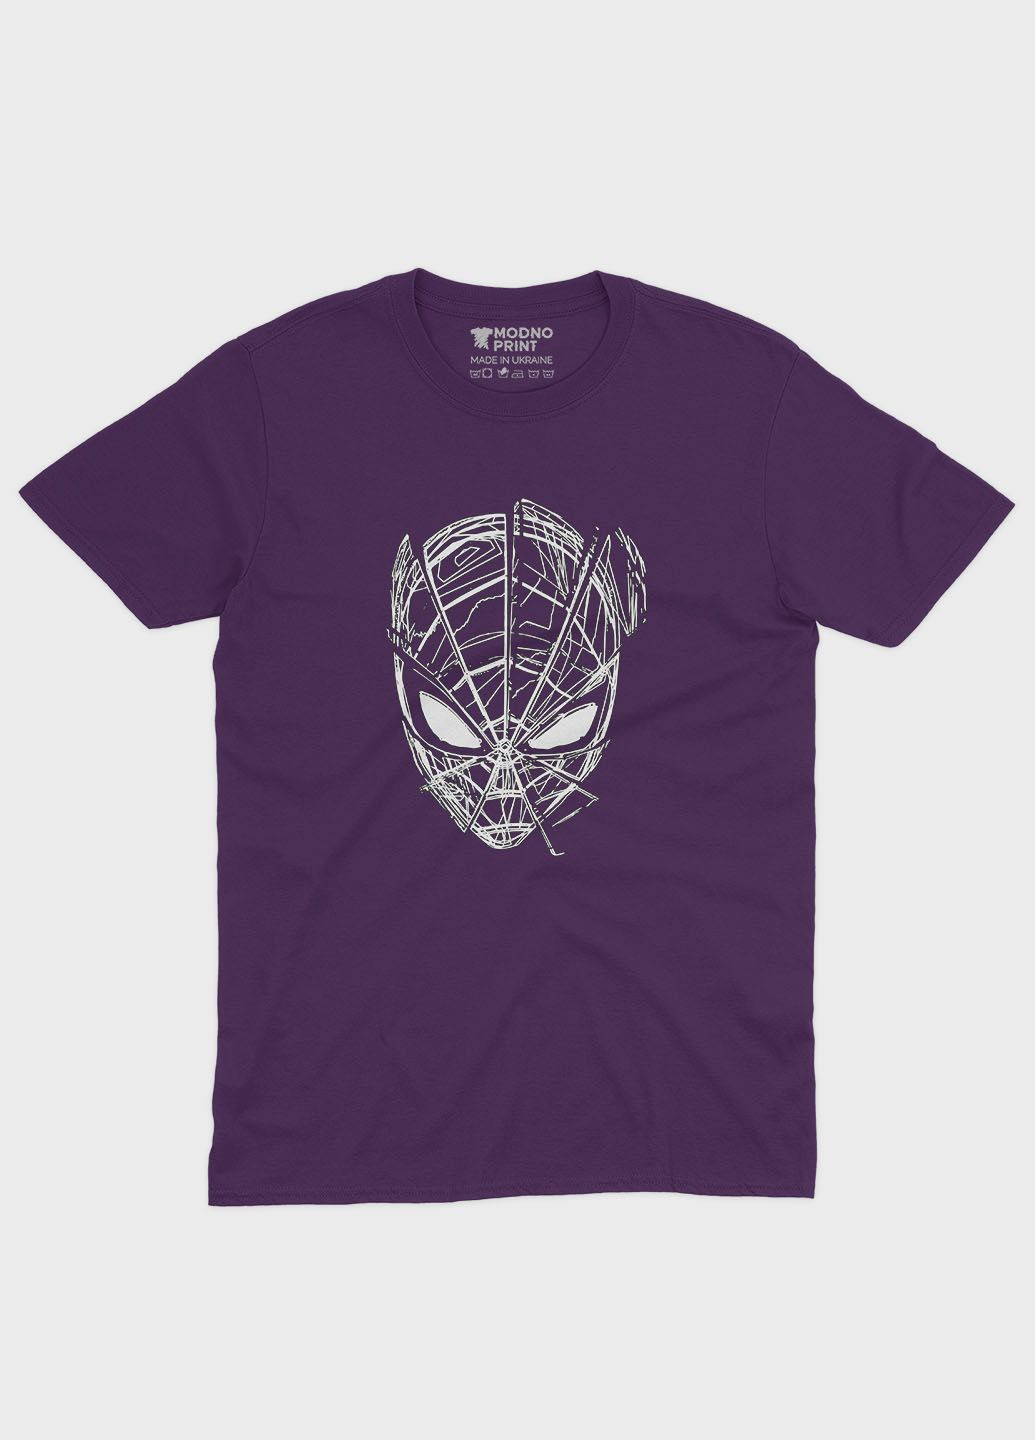 Фиолетовая демисезонная футболка для девочки с принтом супергероя - человек-паук (ts001-1-dby-006-014-070-g) Modno